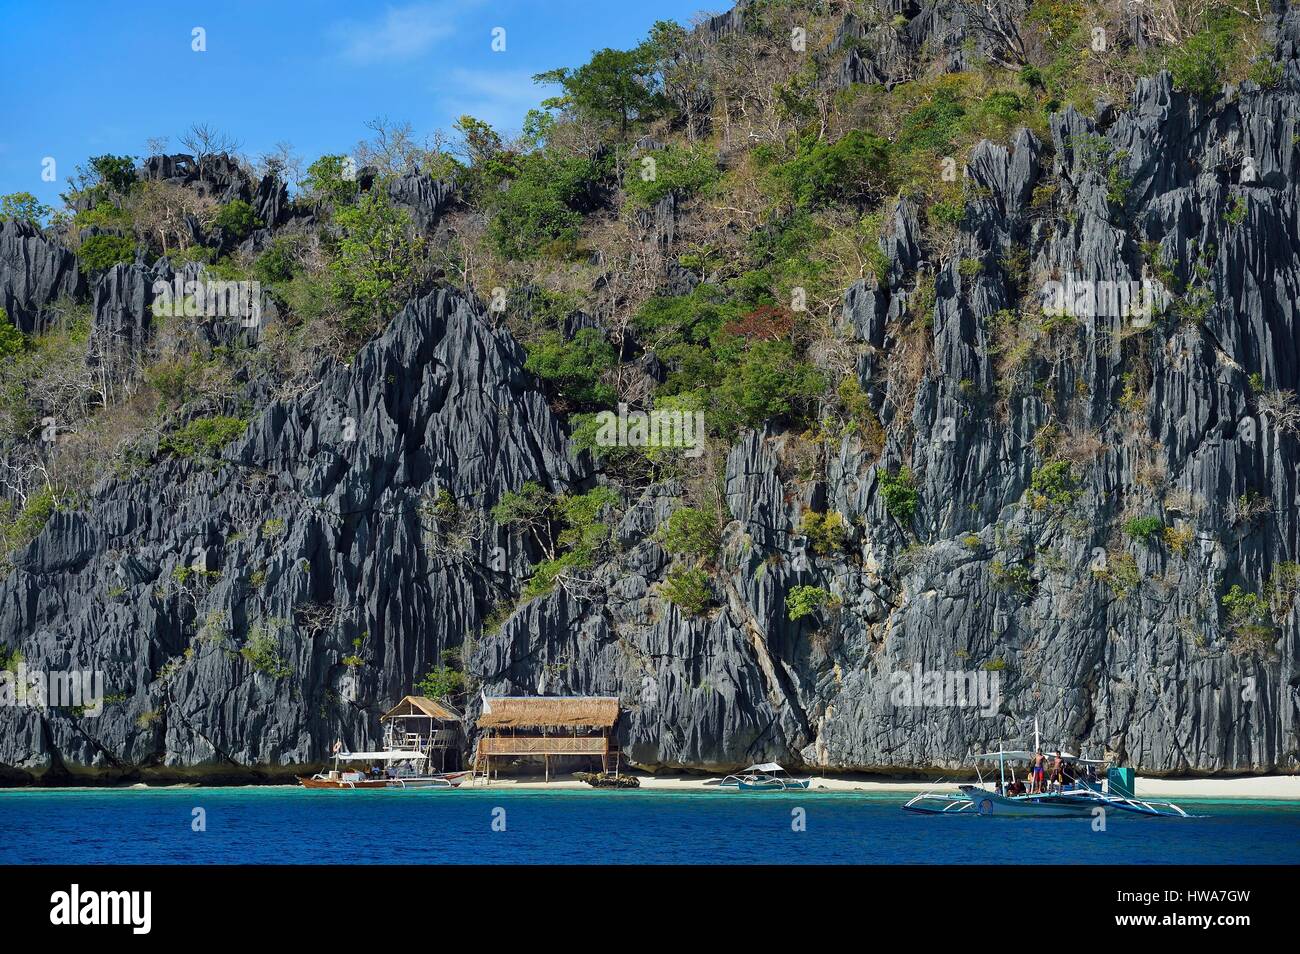 Philippines, Îles Calamian dans le nord de Palawan, l'Île Coron, zone biotique naturel et pirogue plage sous murs géants de falaises calcaires Banque D'Images